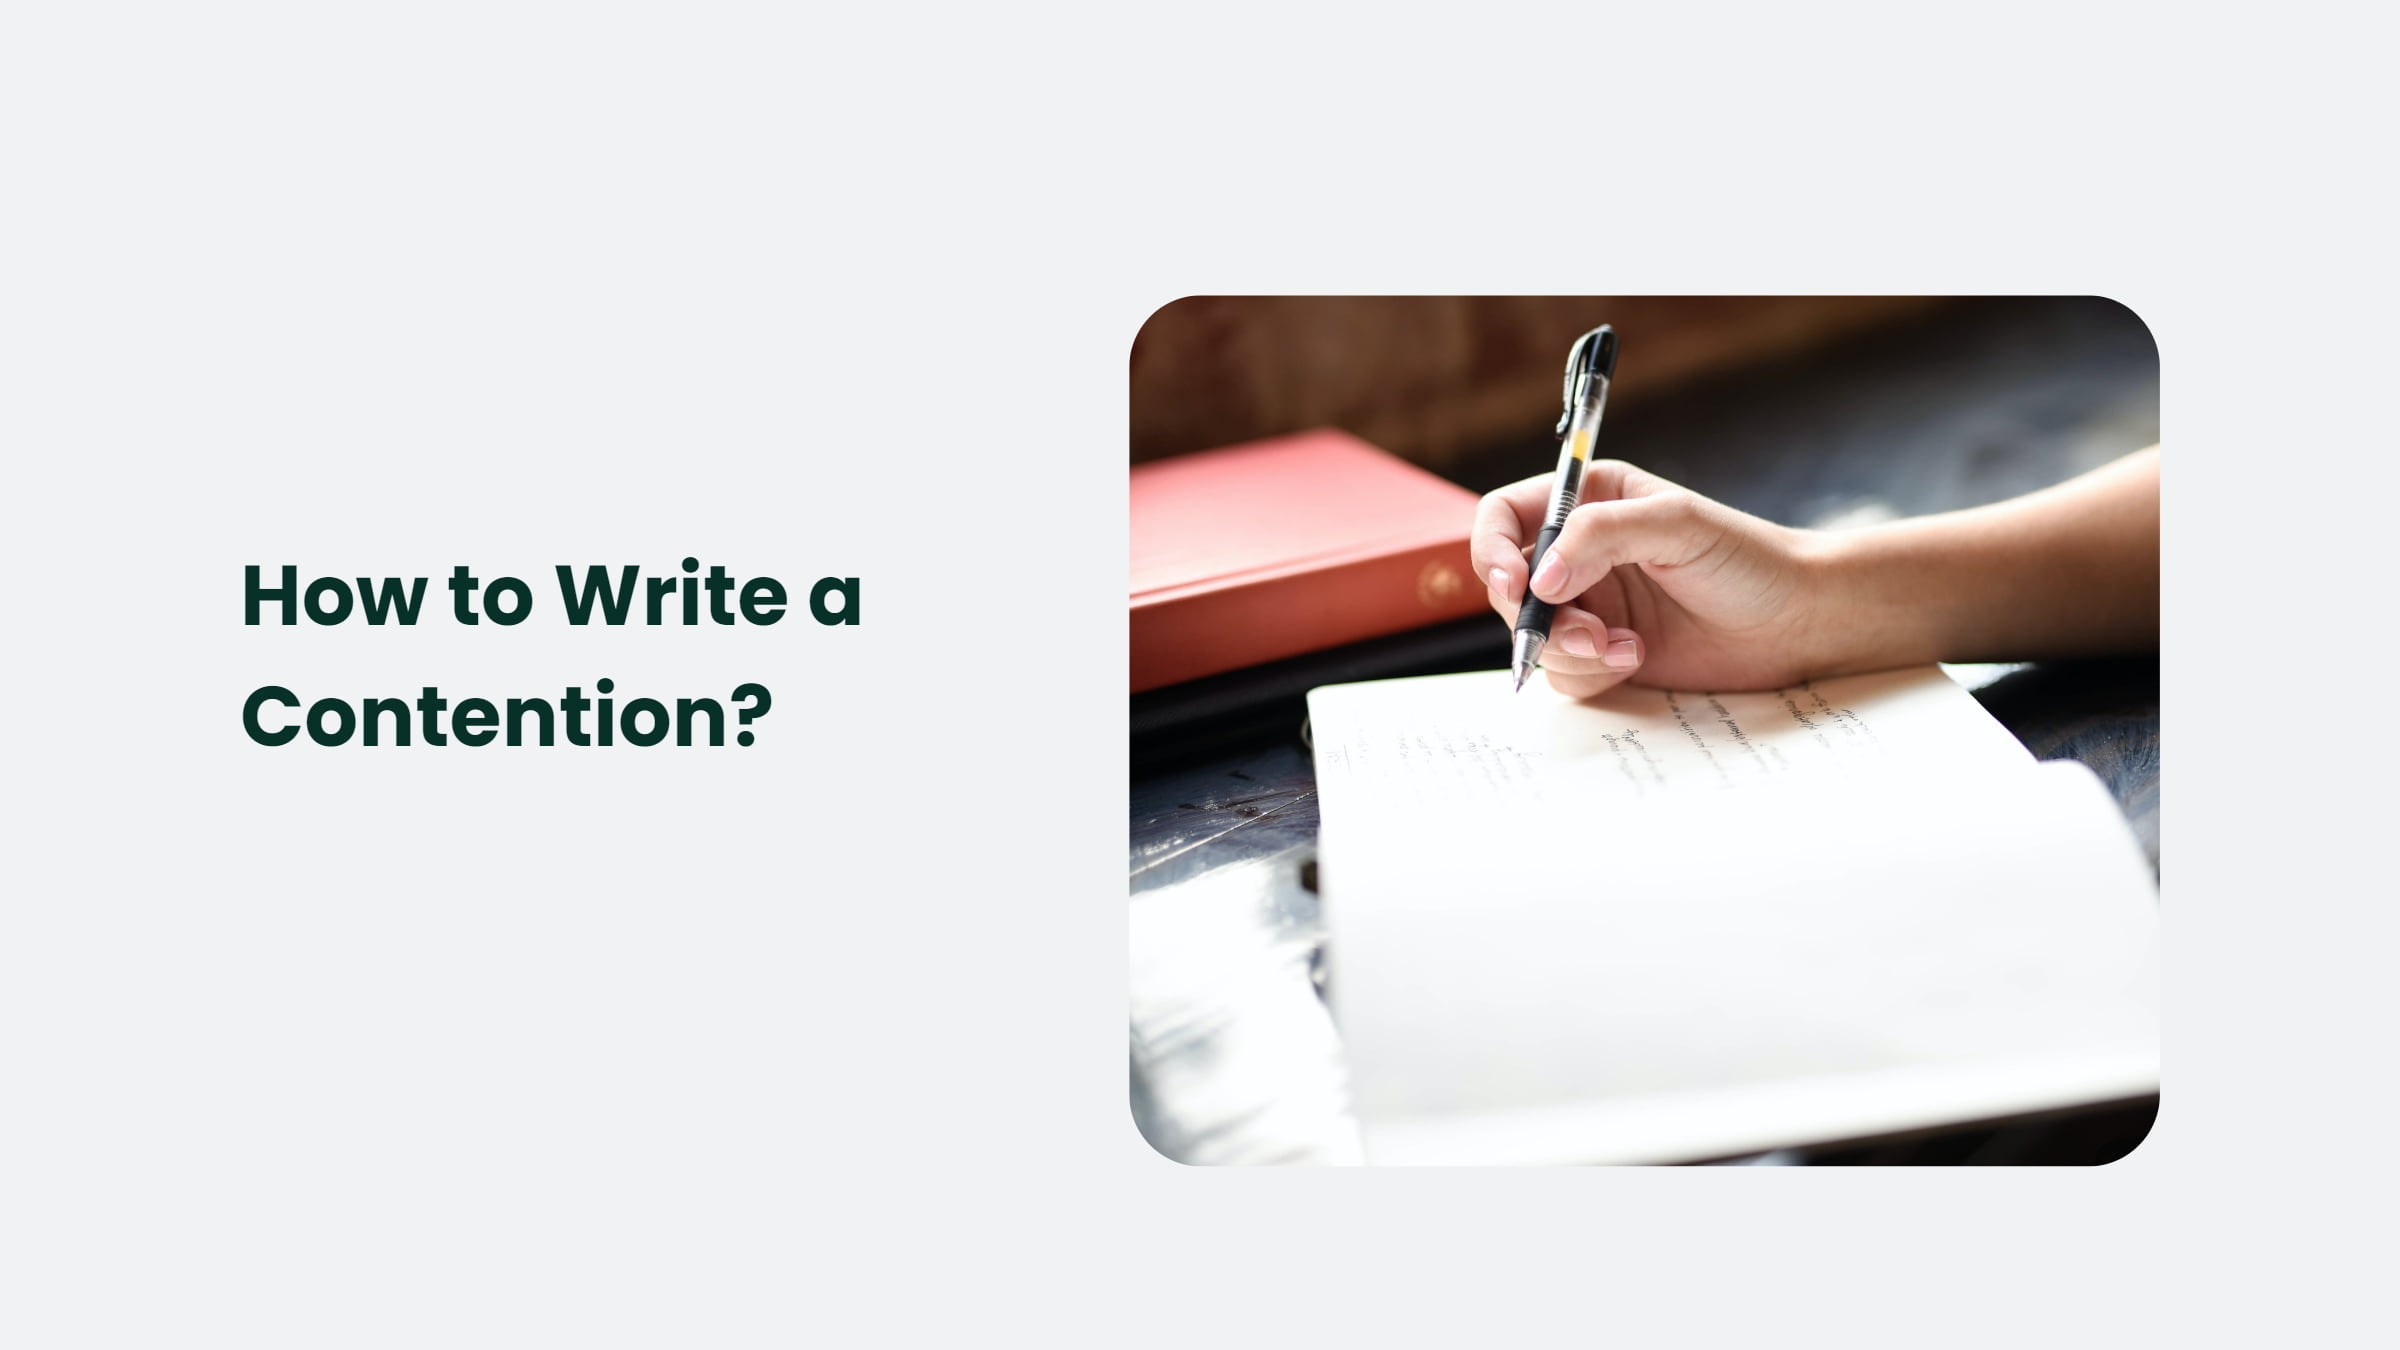 How Do You Write A Contention?